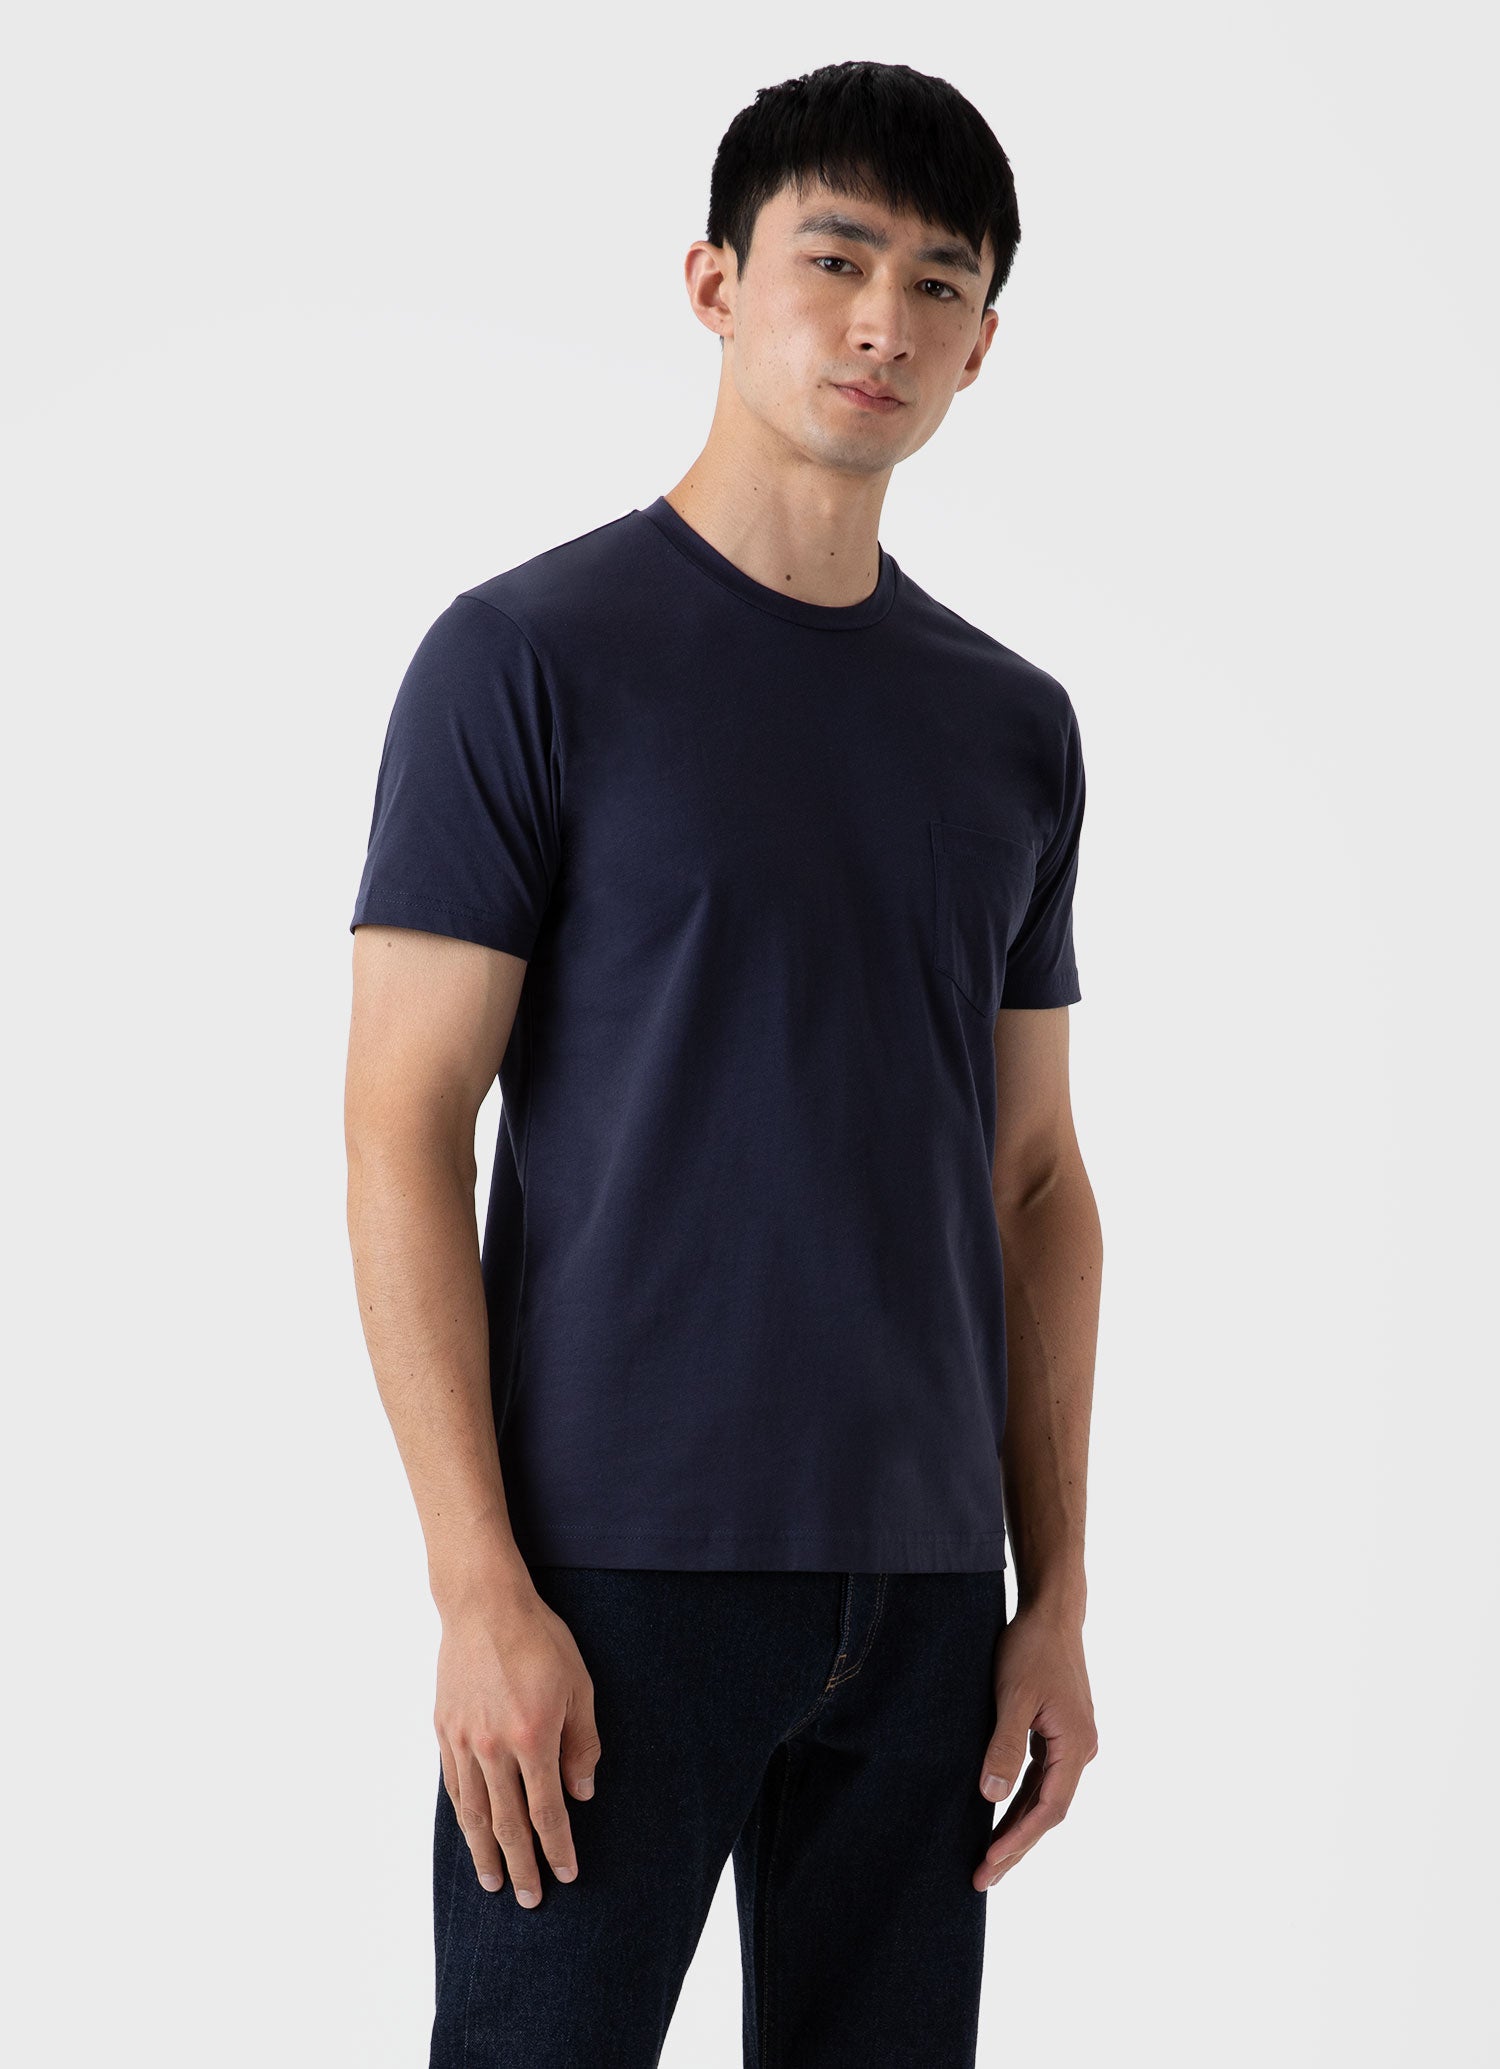 Men's Riviera Pocket T-shirt in Navy | Sunspel